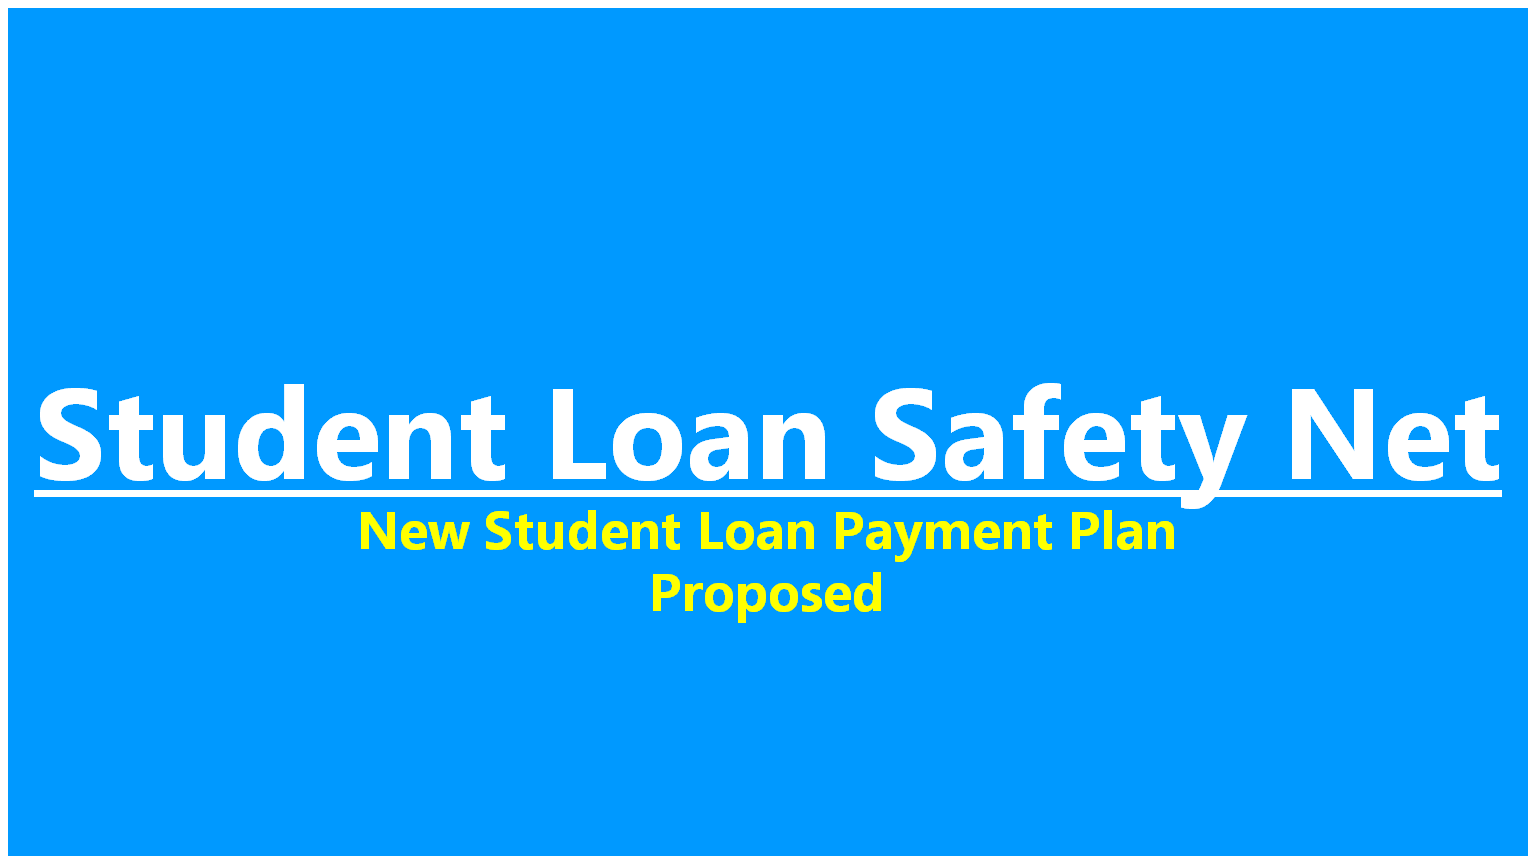 Student loan safety net